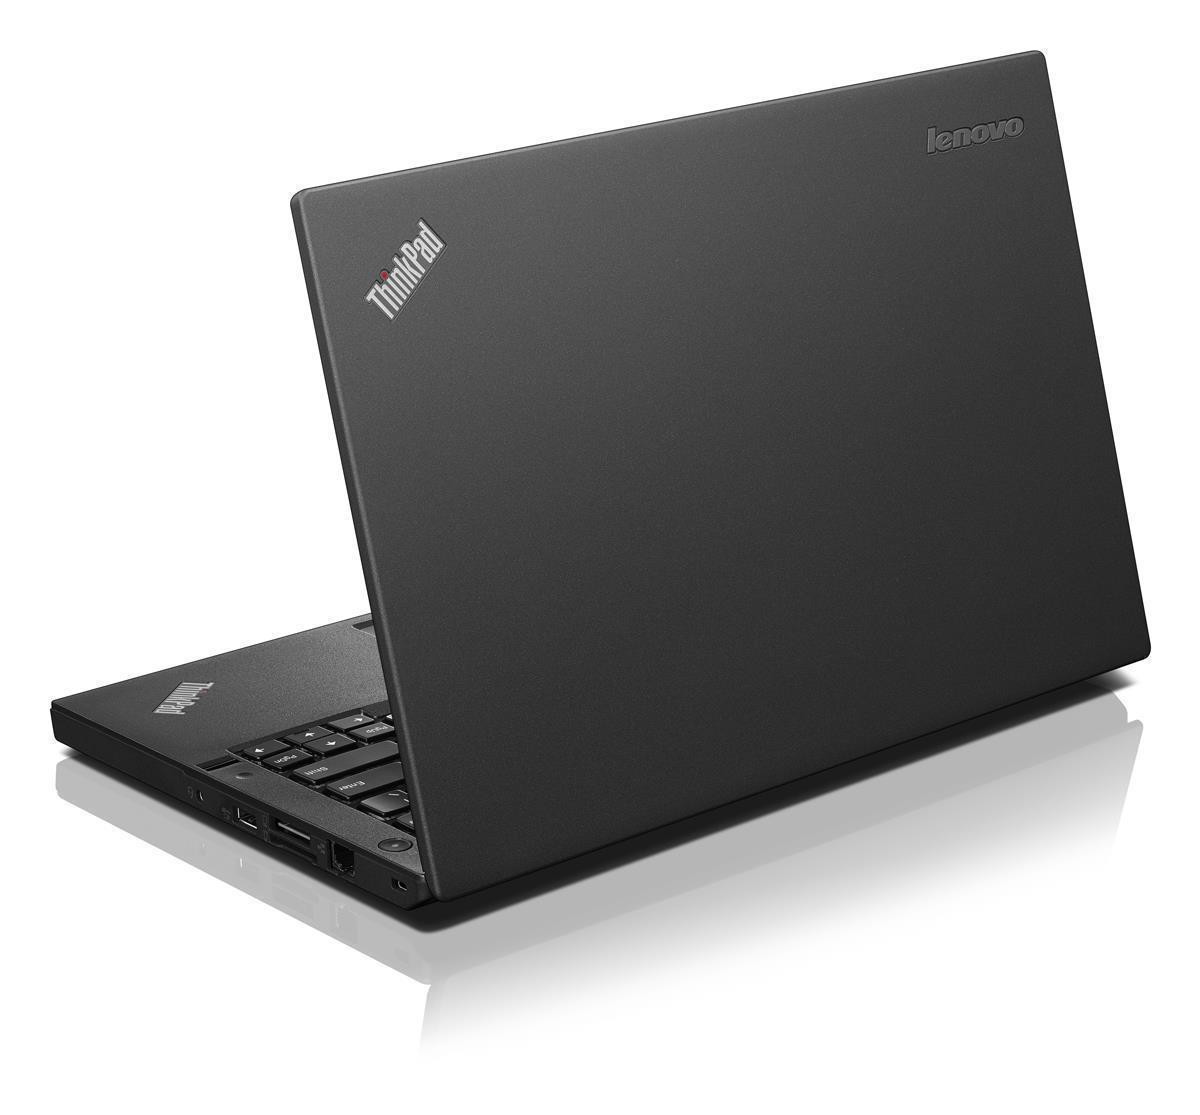 Lenovo ThinkPad X260 i5-6300U 8GB 256GB SSD HD USB 3.0 WEBCAM Win 10 Pro